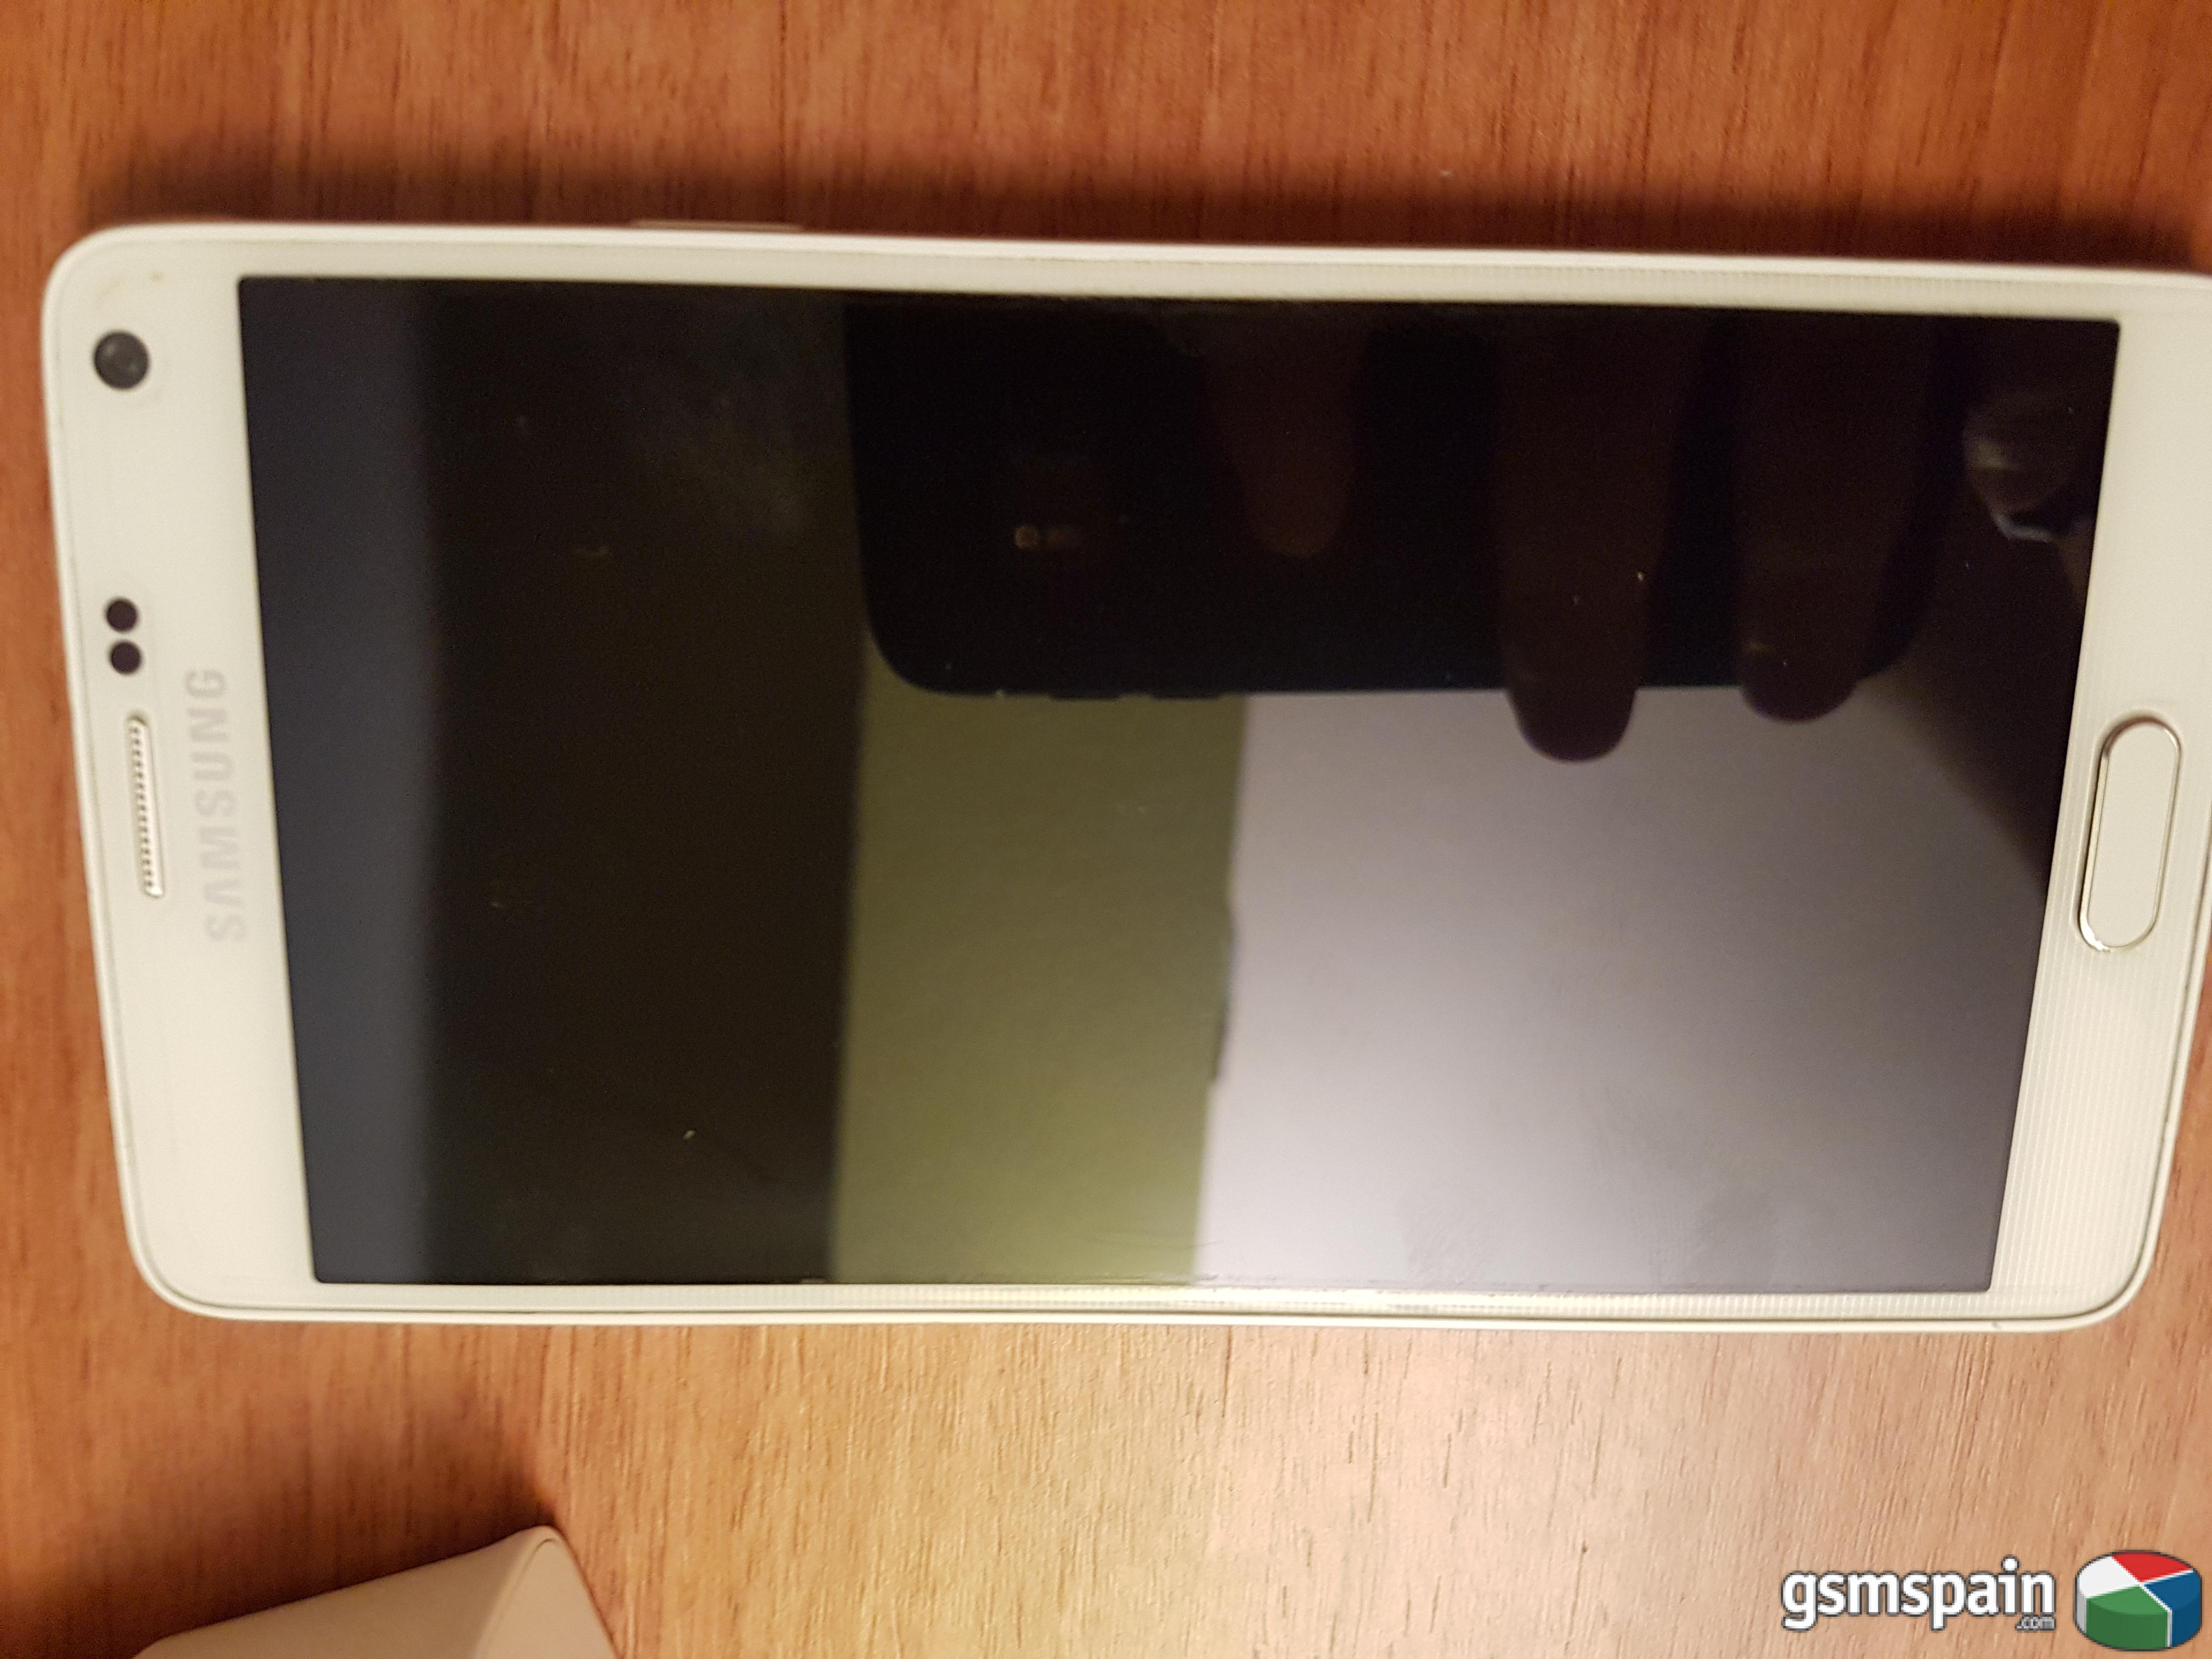 [VENDO] Samsung Galaxy Note 4 32 Gigas Blanco